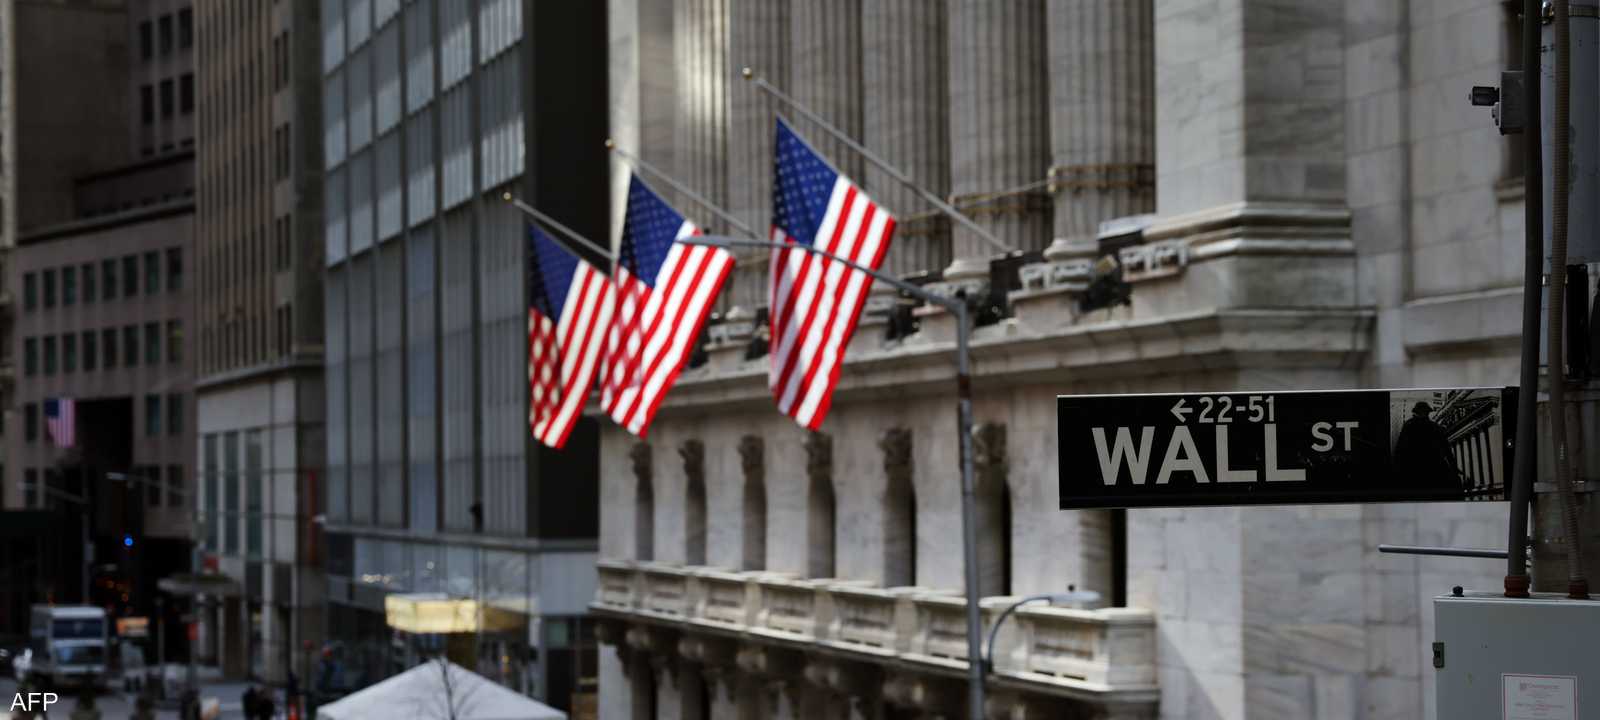 رئيسة بورصة نيويورك تهدد بهجر "وول ستريت"